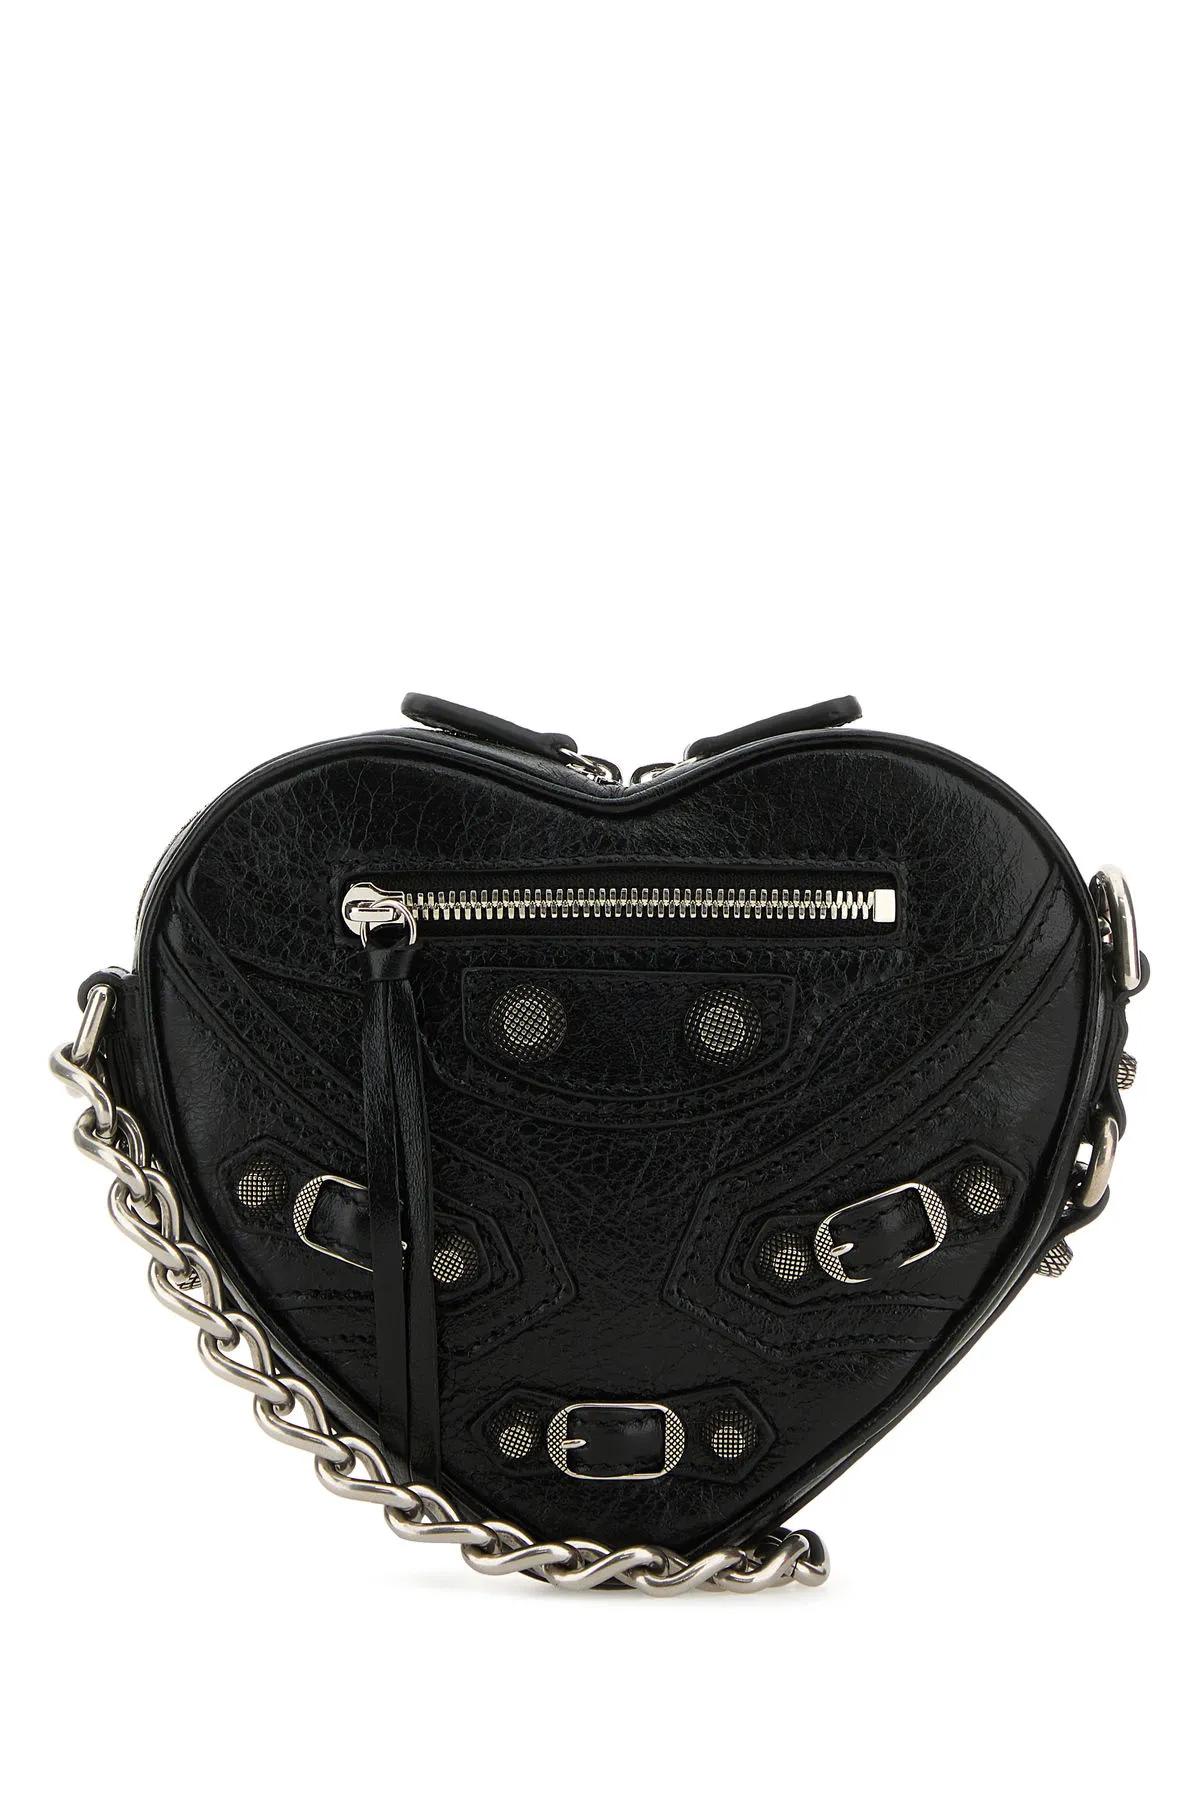 Balenciaga Black Leather Mini Le Cagole Heart Crossbody Bag